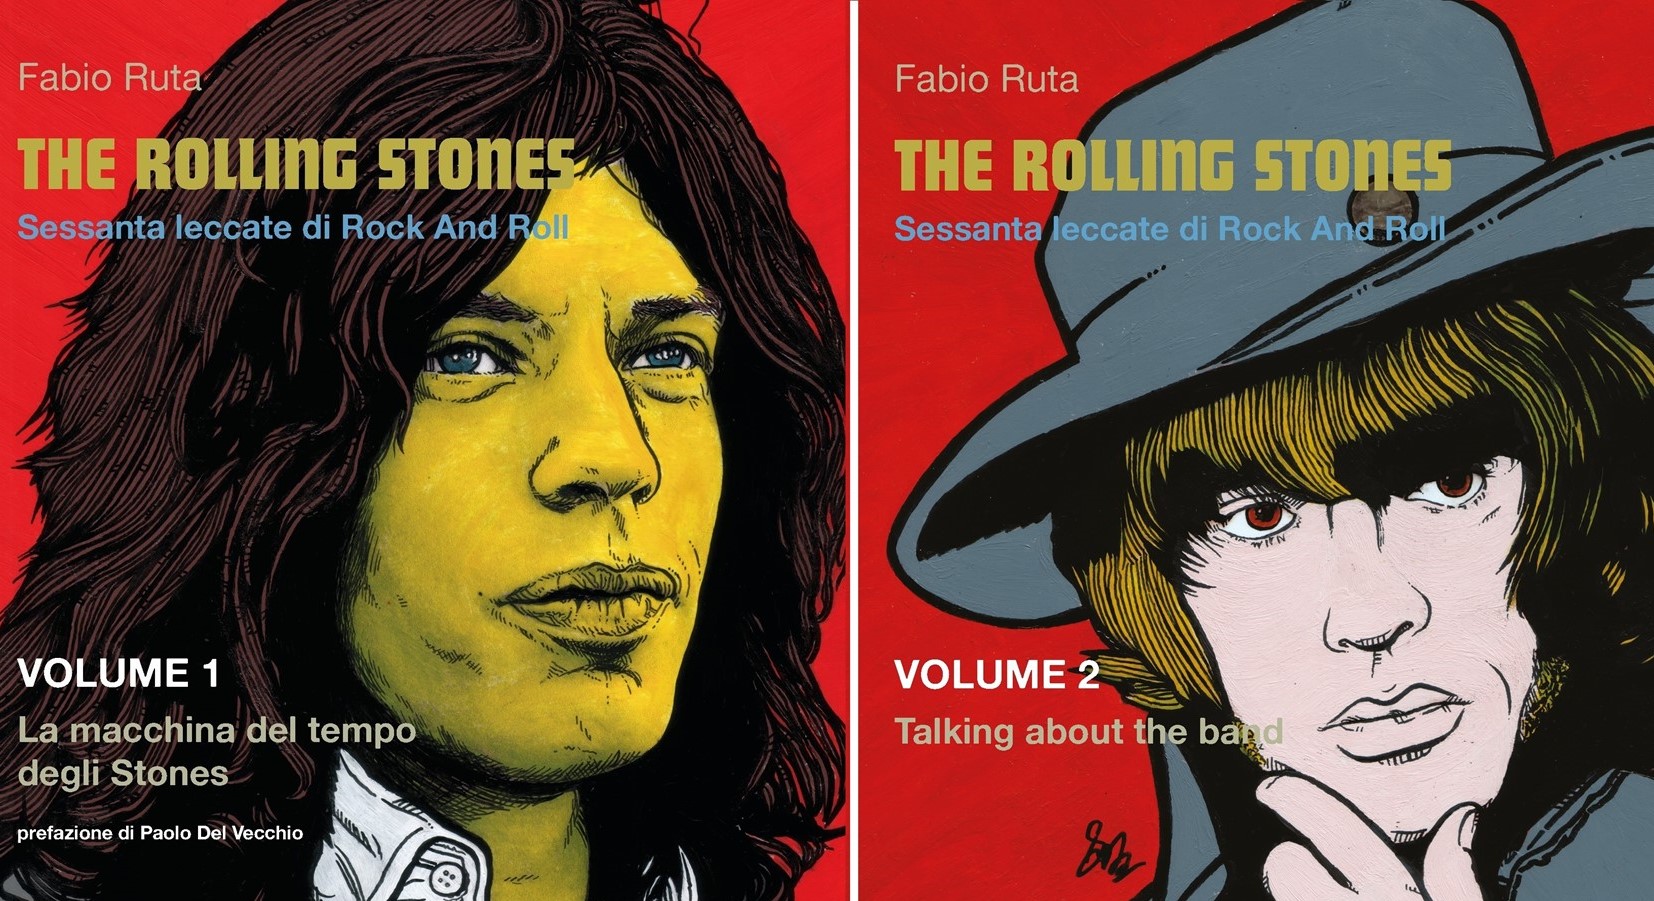 The Rolling Stones – Sessanta leccate di Rock and Roll di Fabio Ruta